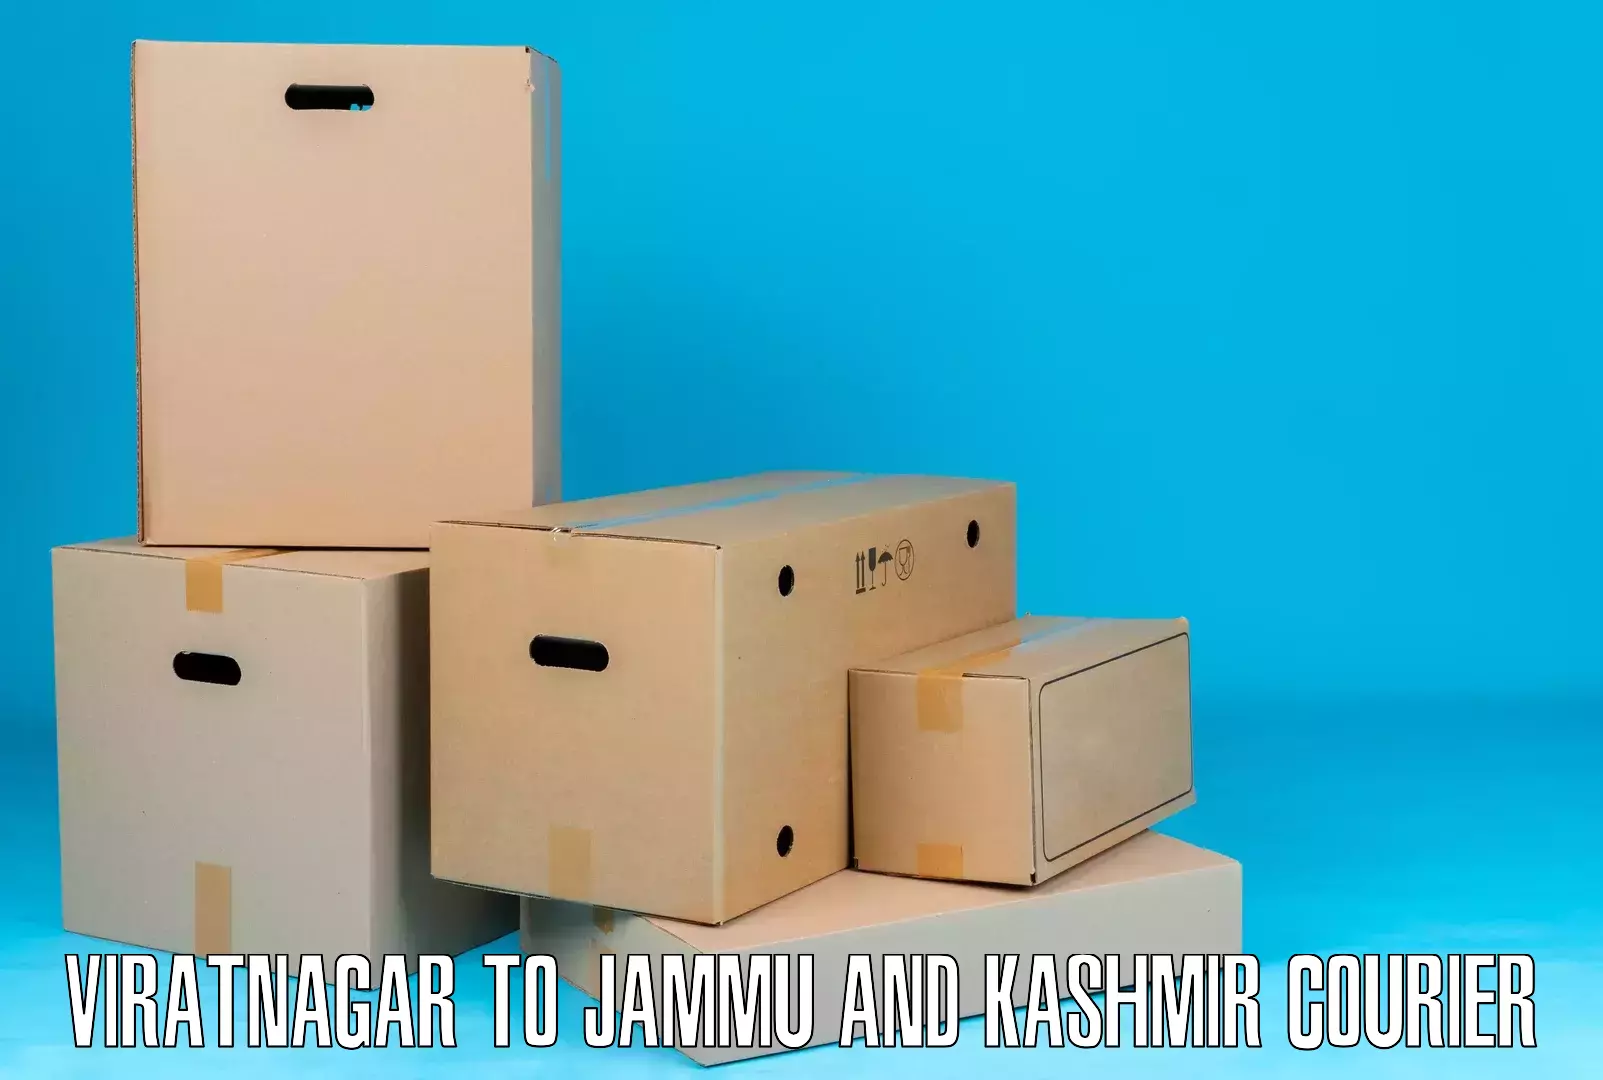 Cash on delivery service Viratnagar to IIT Jammu